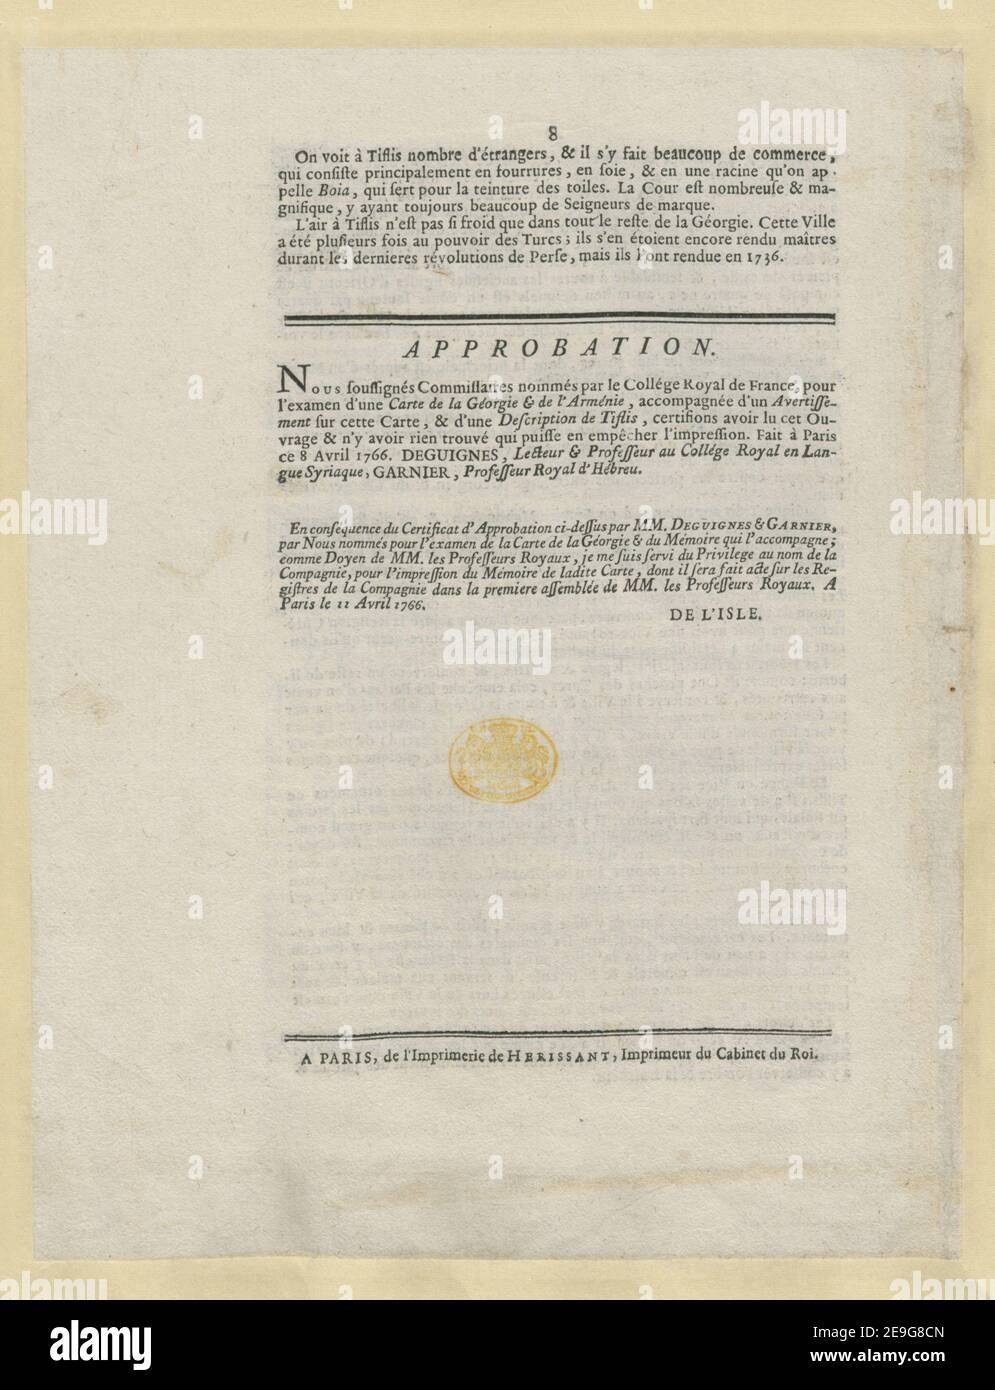 Avertissement Sur la Carte geÃÅneÃÅrale de la GeÃÅorgie, ArmeÃÅnie, &c. Book information:  Title: Avertissement Sur la Carte geÃÅneÃÅrale de la GeÃÅorgie, ArmeÃÅnie, ,c. 114.58.b. Place of publication: A Paris Publisher: de l'Imprimerie de Herissant, Imprimeur du Cabinet du Roi., Date of publication: [1766 c.]  Item type: 1 pamphlet Dimensions: sheet 25.1 x 36.3 cm  Former owner: George III, King of Great Britain, 1738-1820 Stock Photo